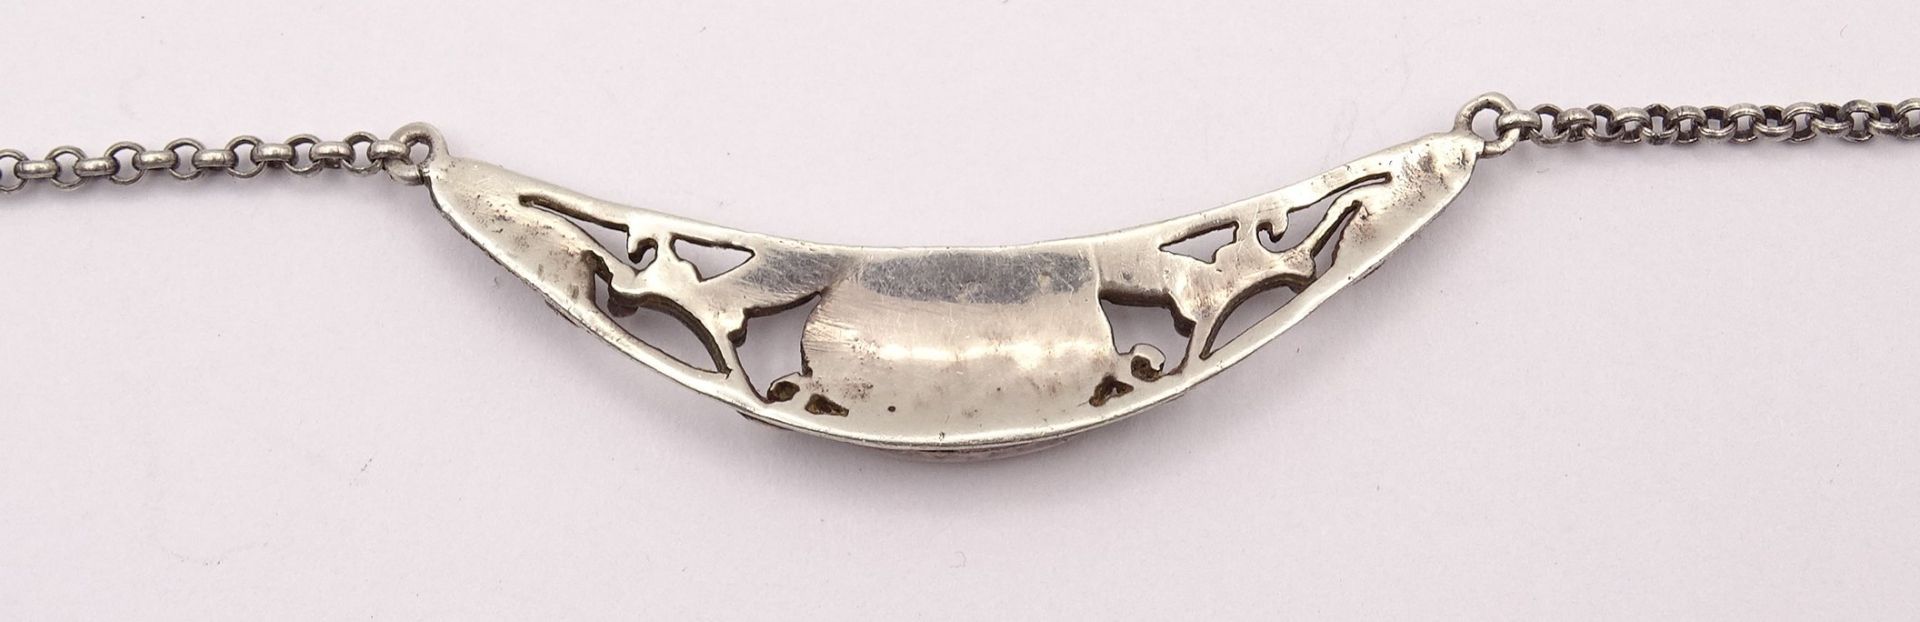 Halskette mit schwarzen Stein, Silber 0.925, L. 47cm, 7,3g. - Image 3 of 3